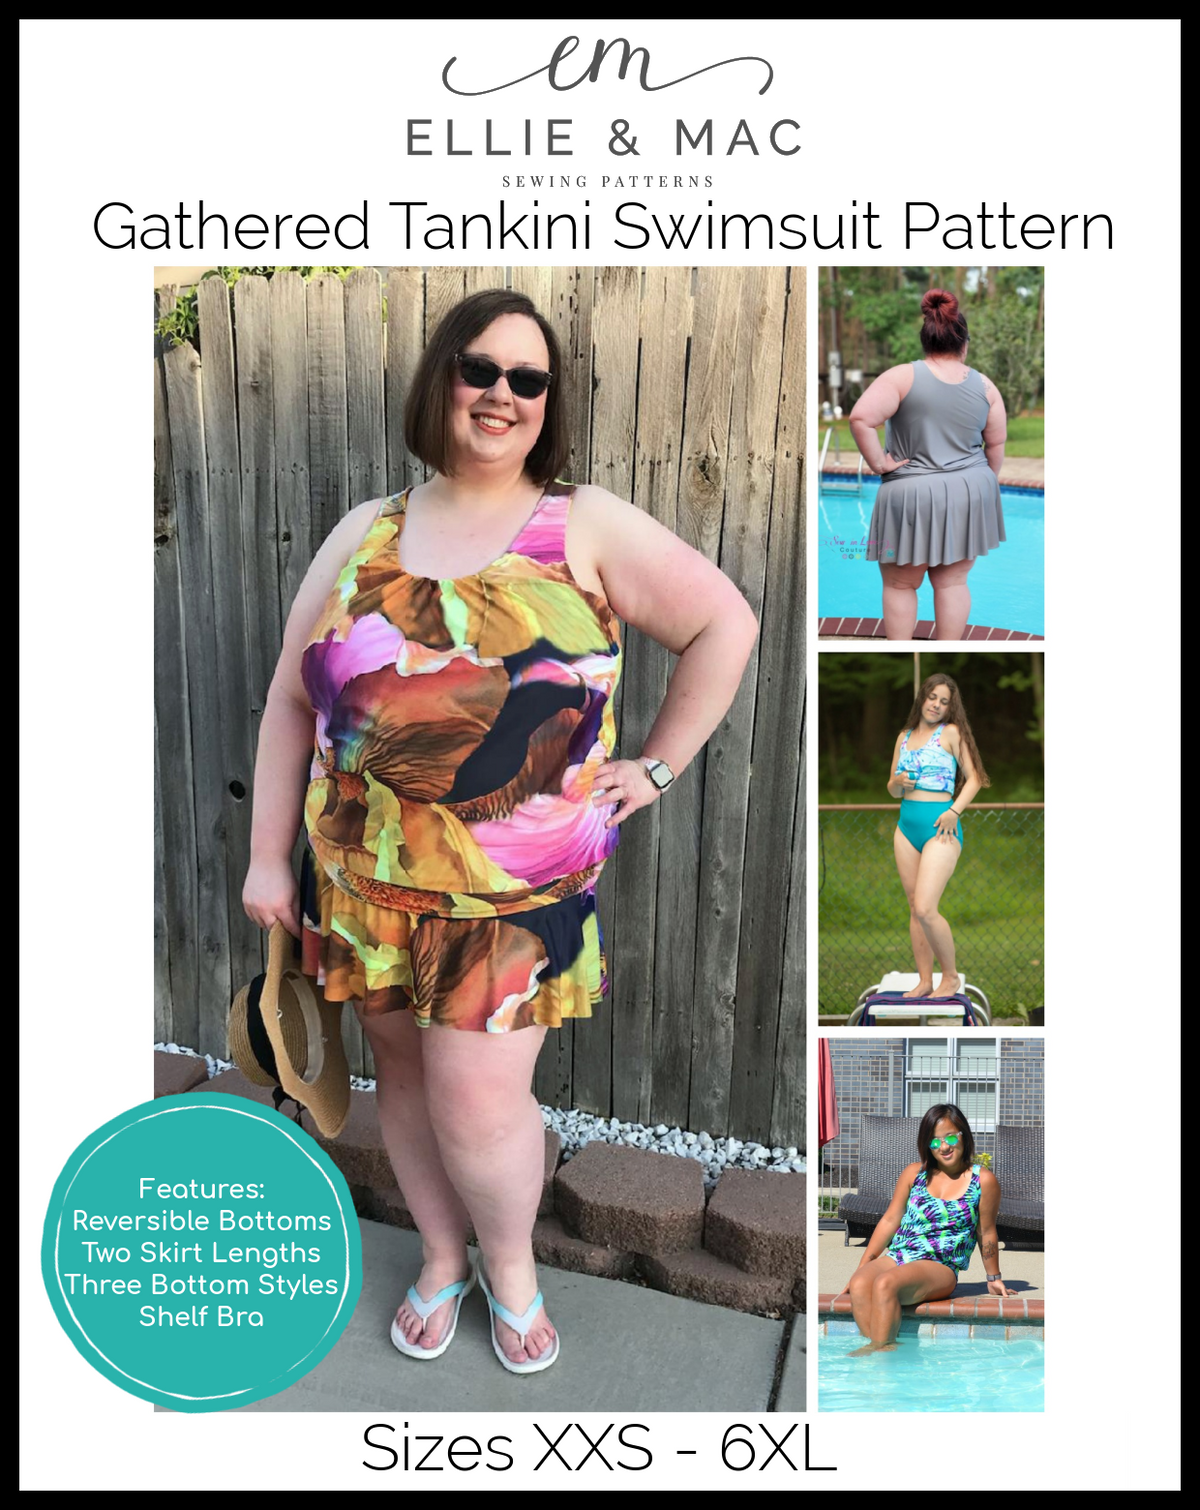 Gathered Tankini Swimsuit Mix & Match Pattern